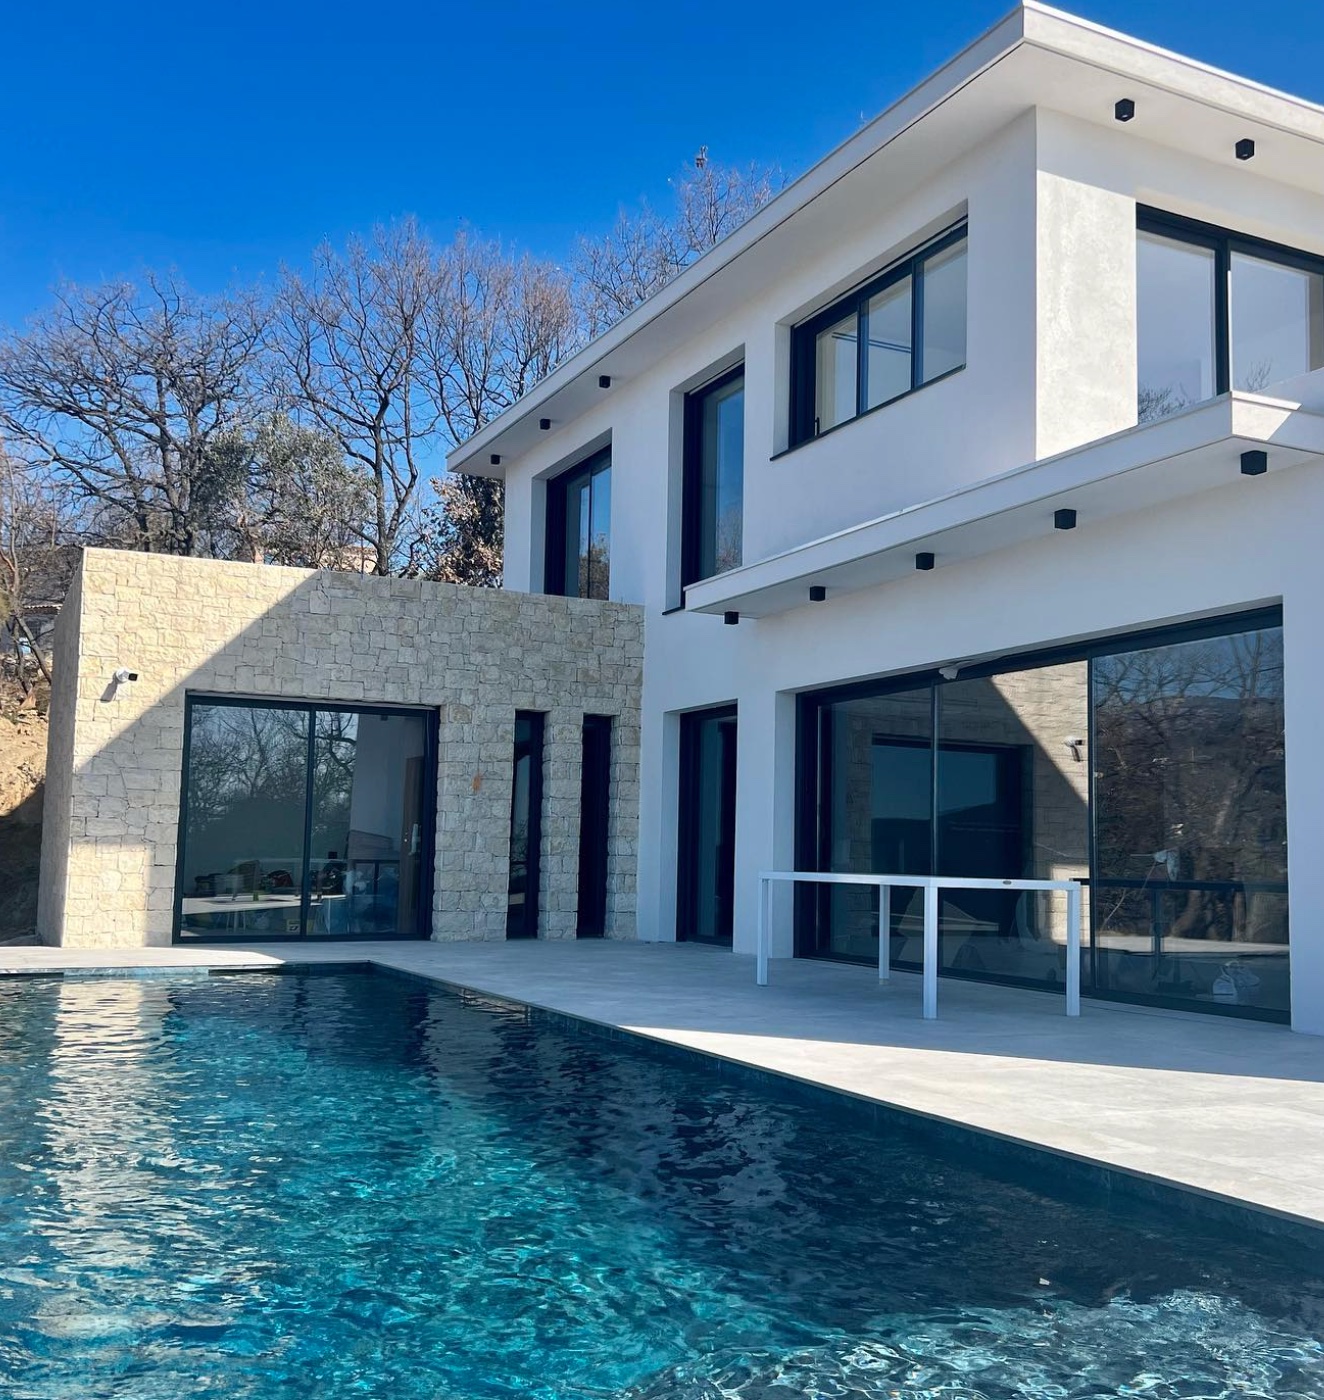 maison facade exterieure piscine beton gris